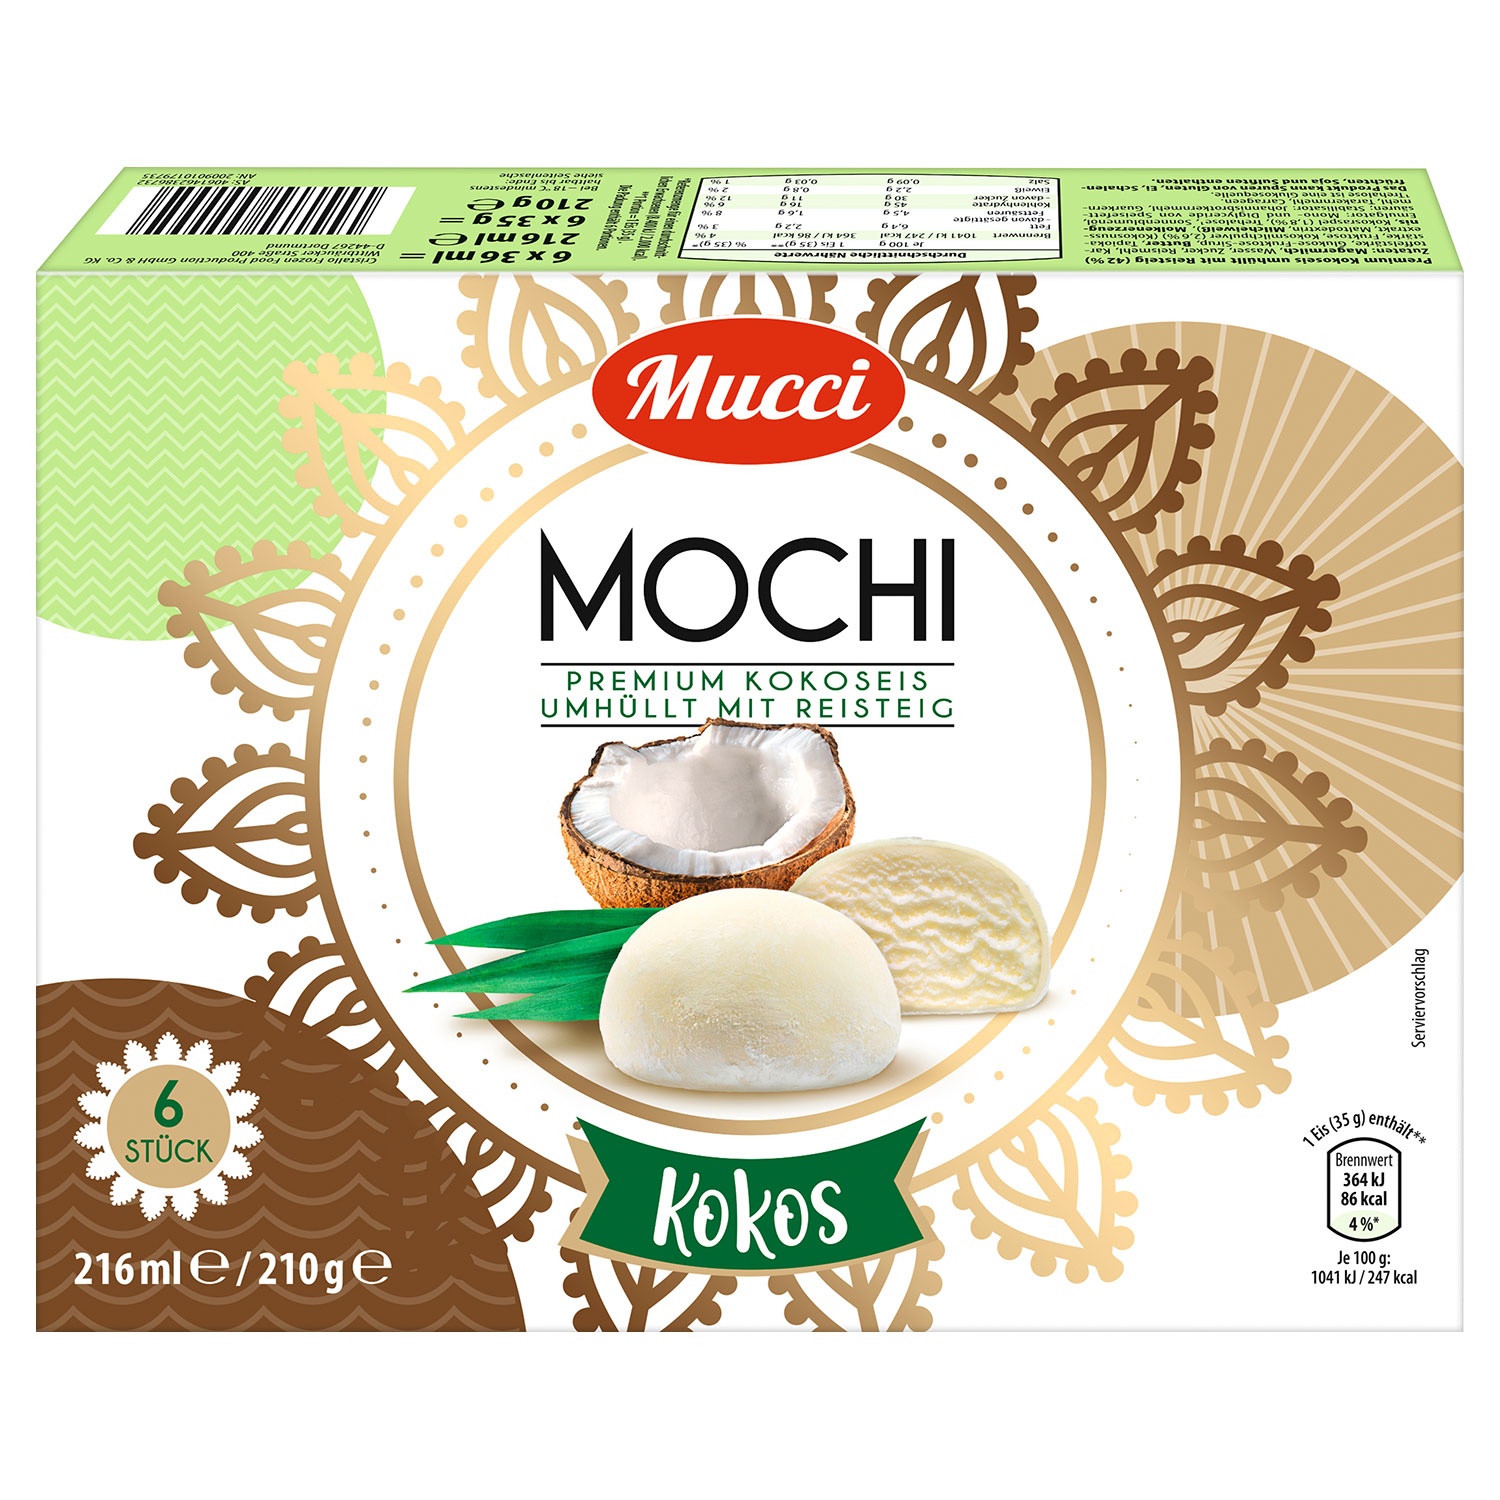 MUCCI Mochi-Eis 216 ml